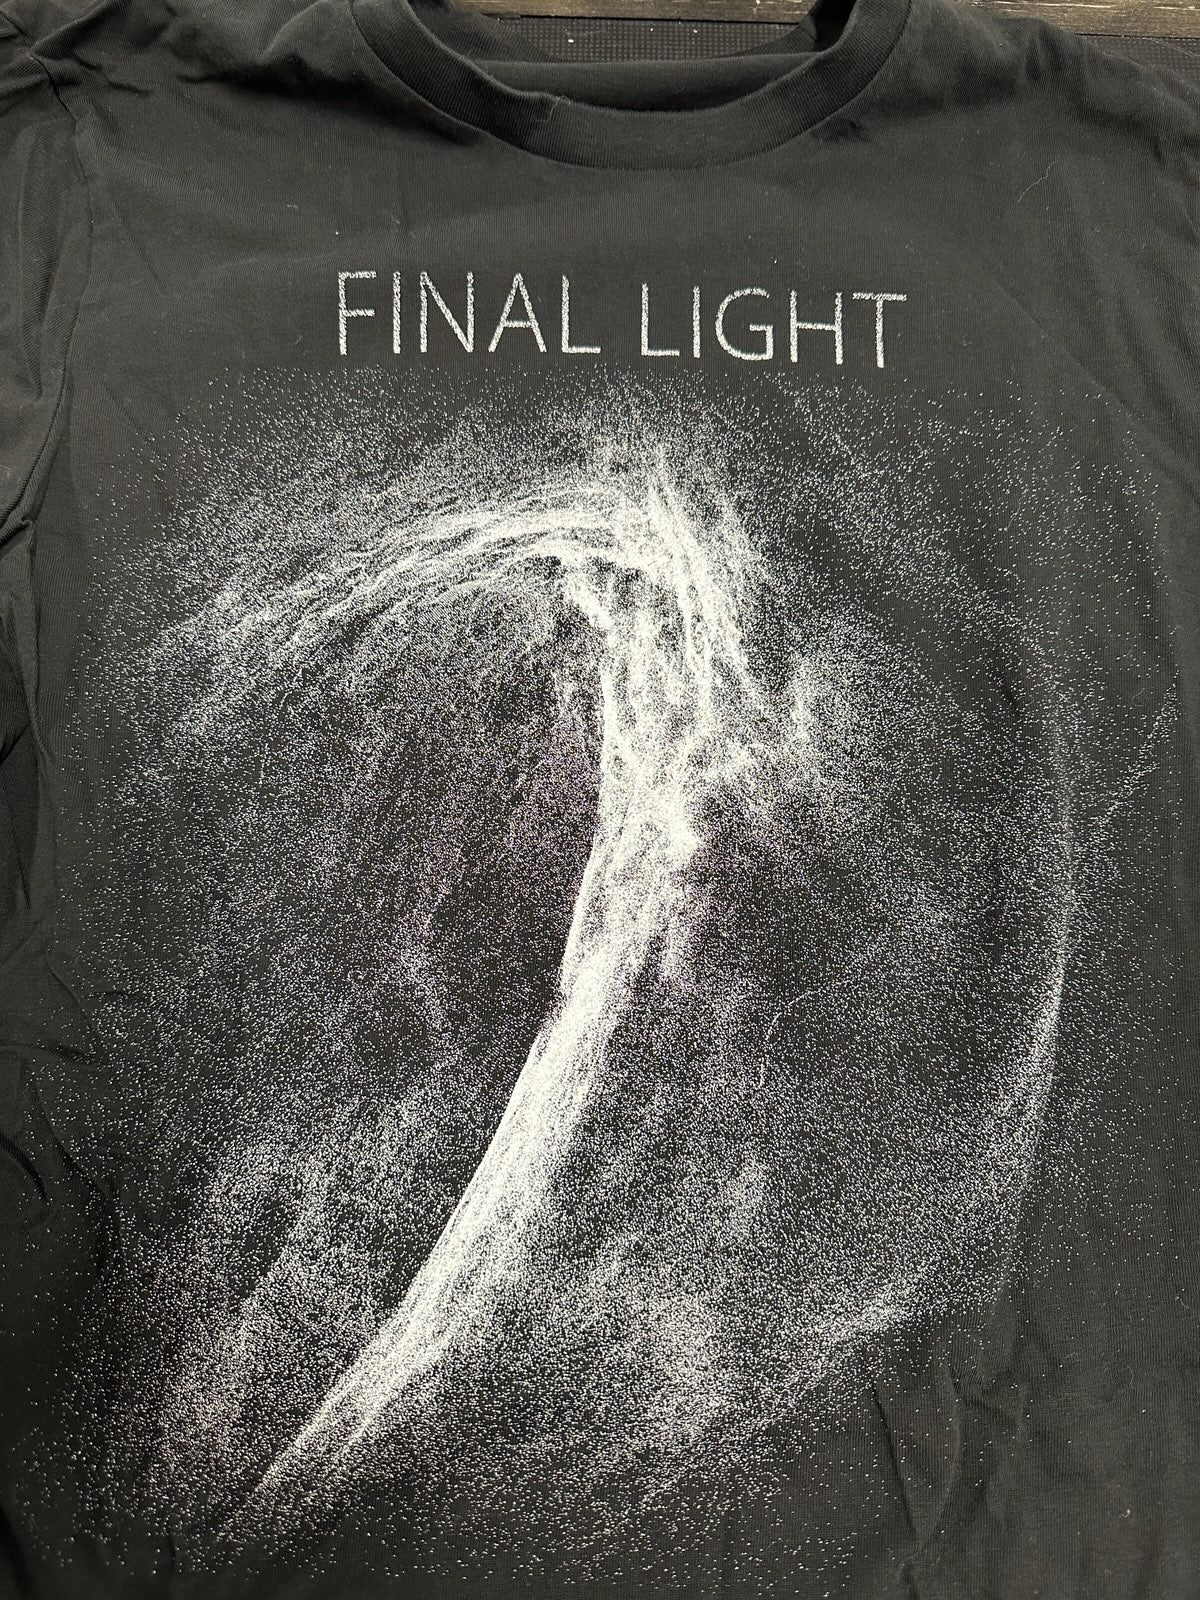 Final Light Graphic T-Shirt, Blk, S